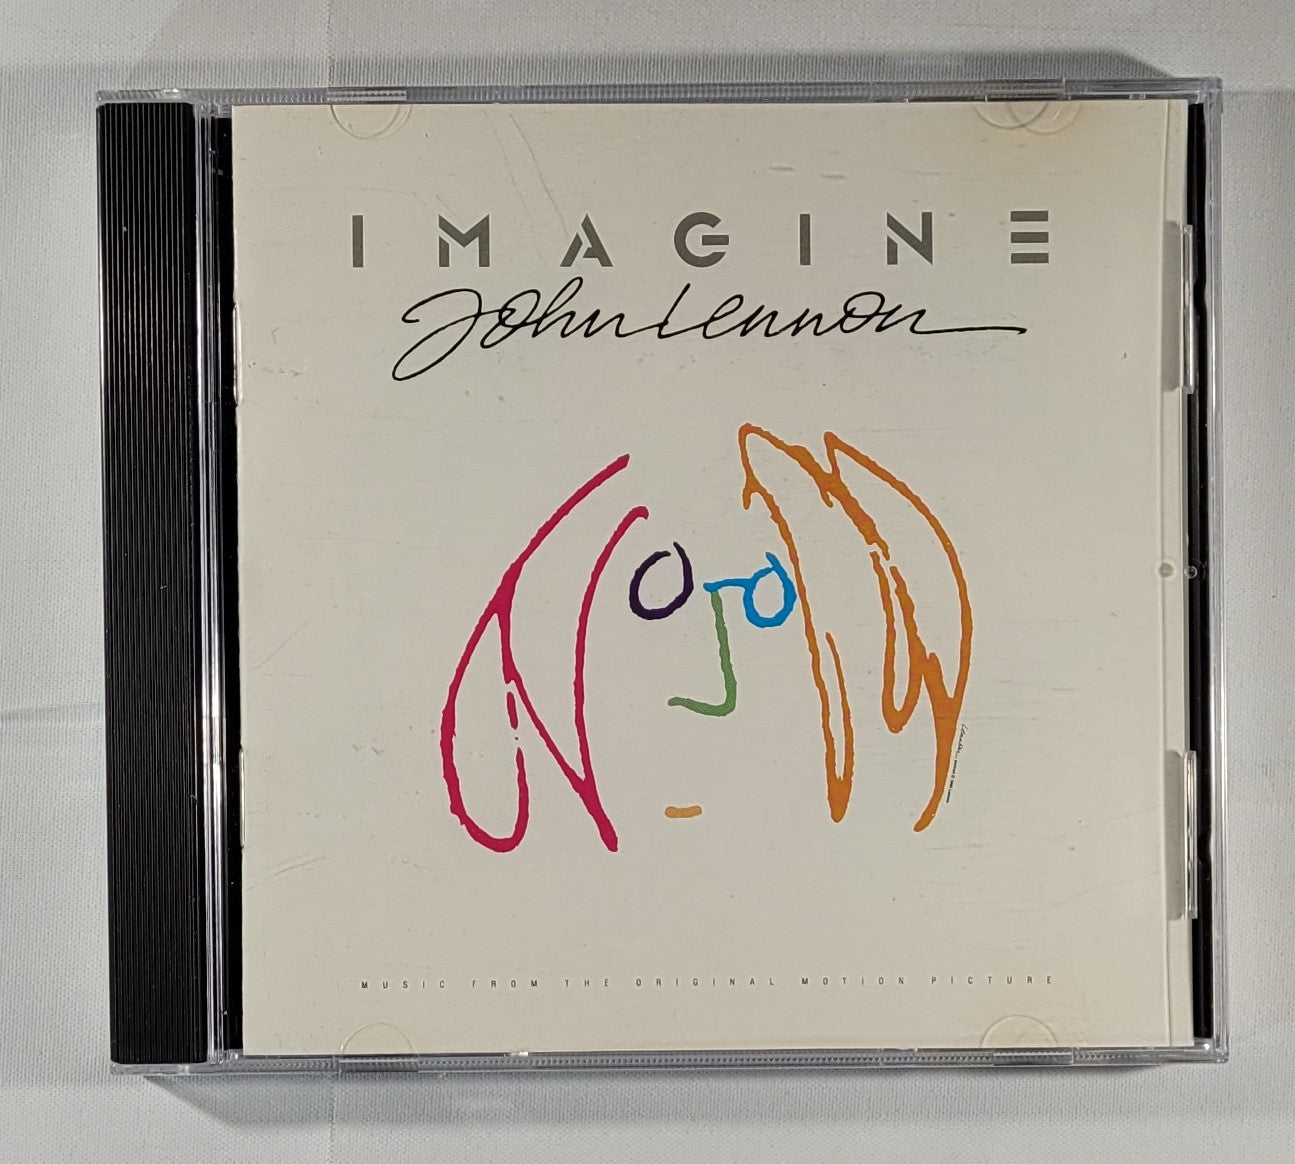 John Lennon - Imagine: John Lennon, Music From the Motion Picture [1988 Used CD]